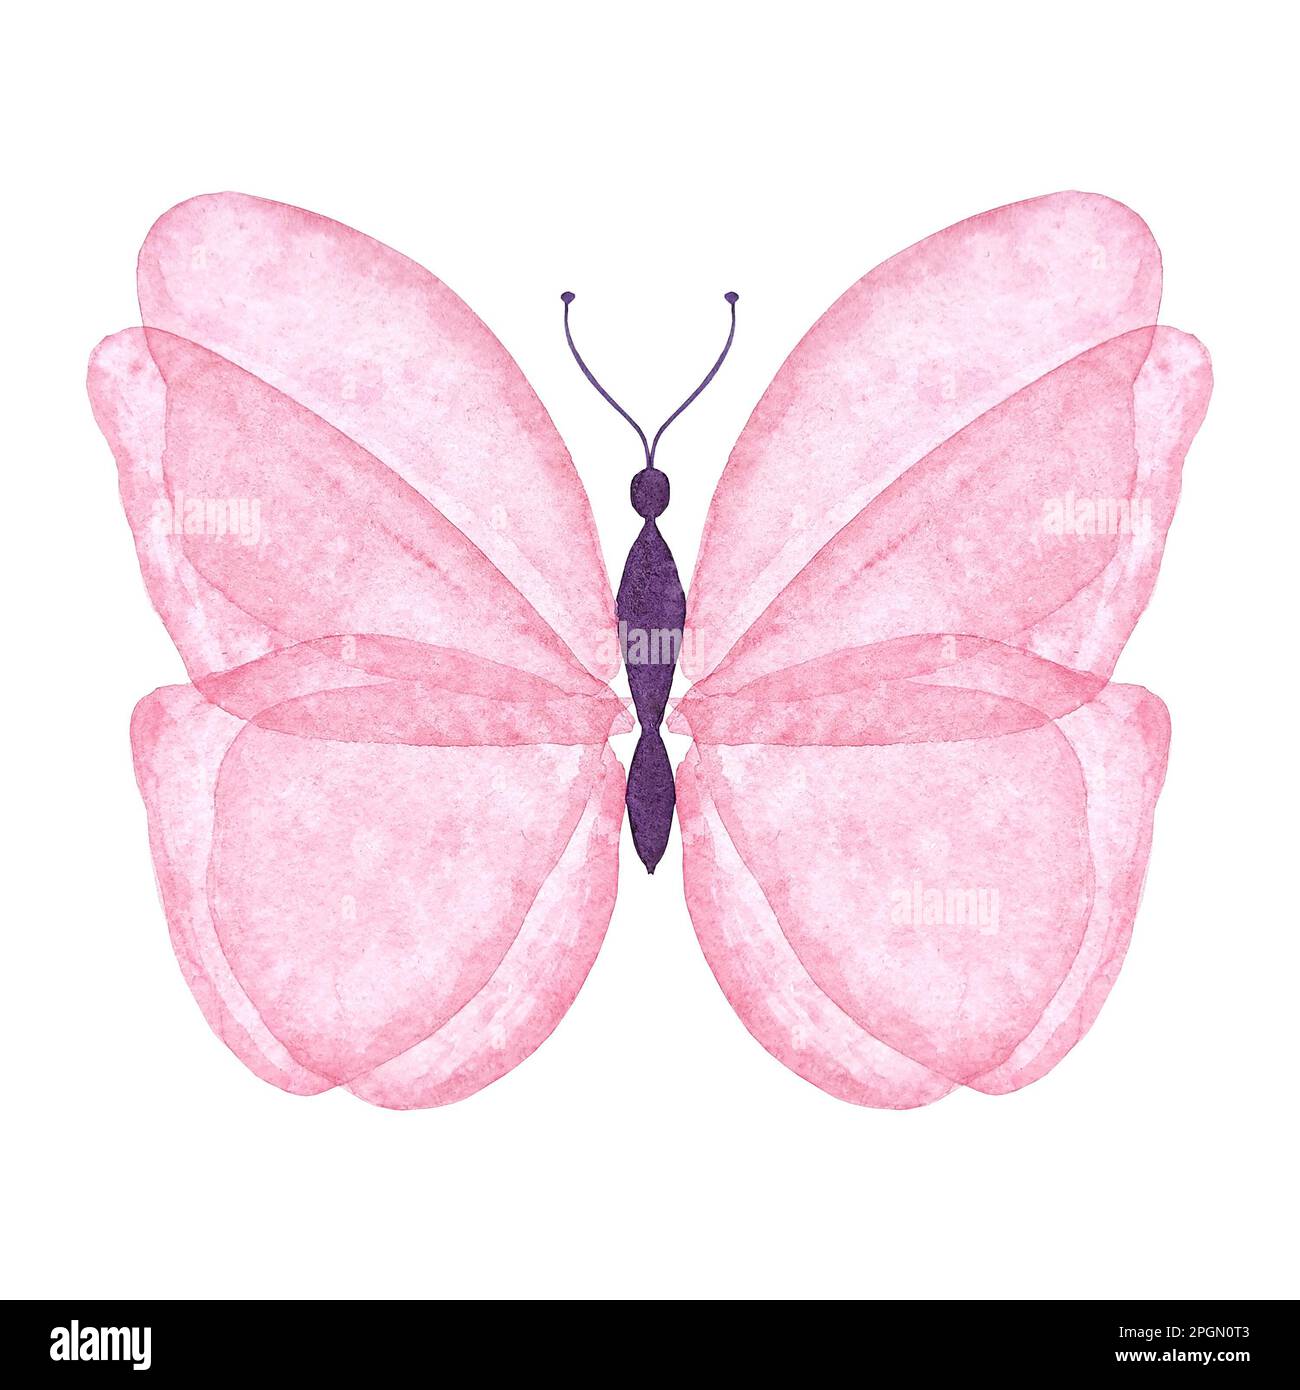 Illustration isolée papillon rose aquarelle. Insecte de style botanique peint à la main sur fond blanc pour une utilisation dans le mariage, les vacances, le design des enfants Banque D'Images